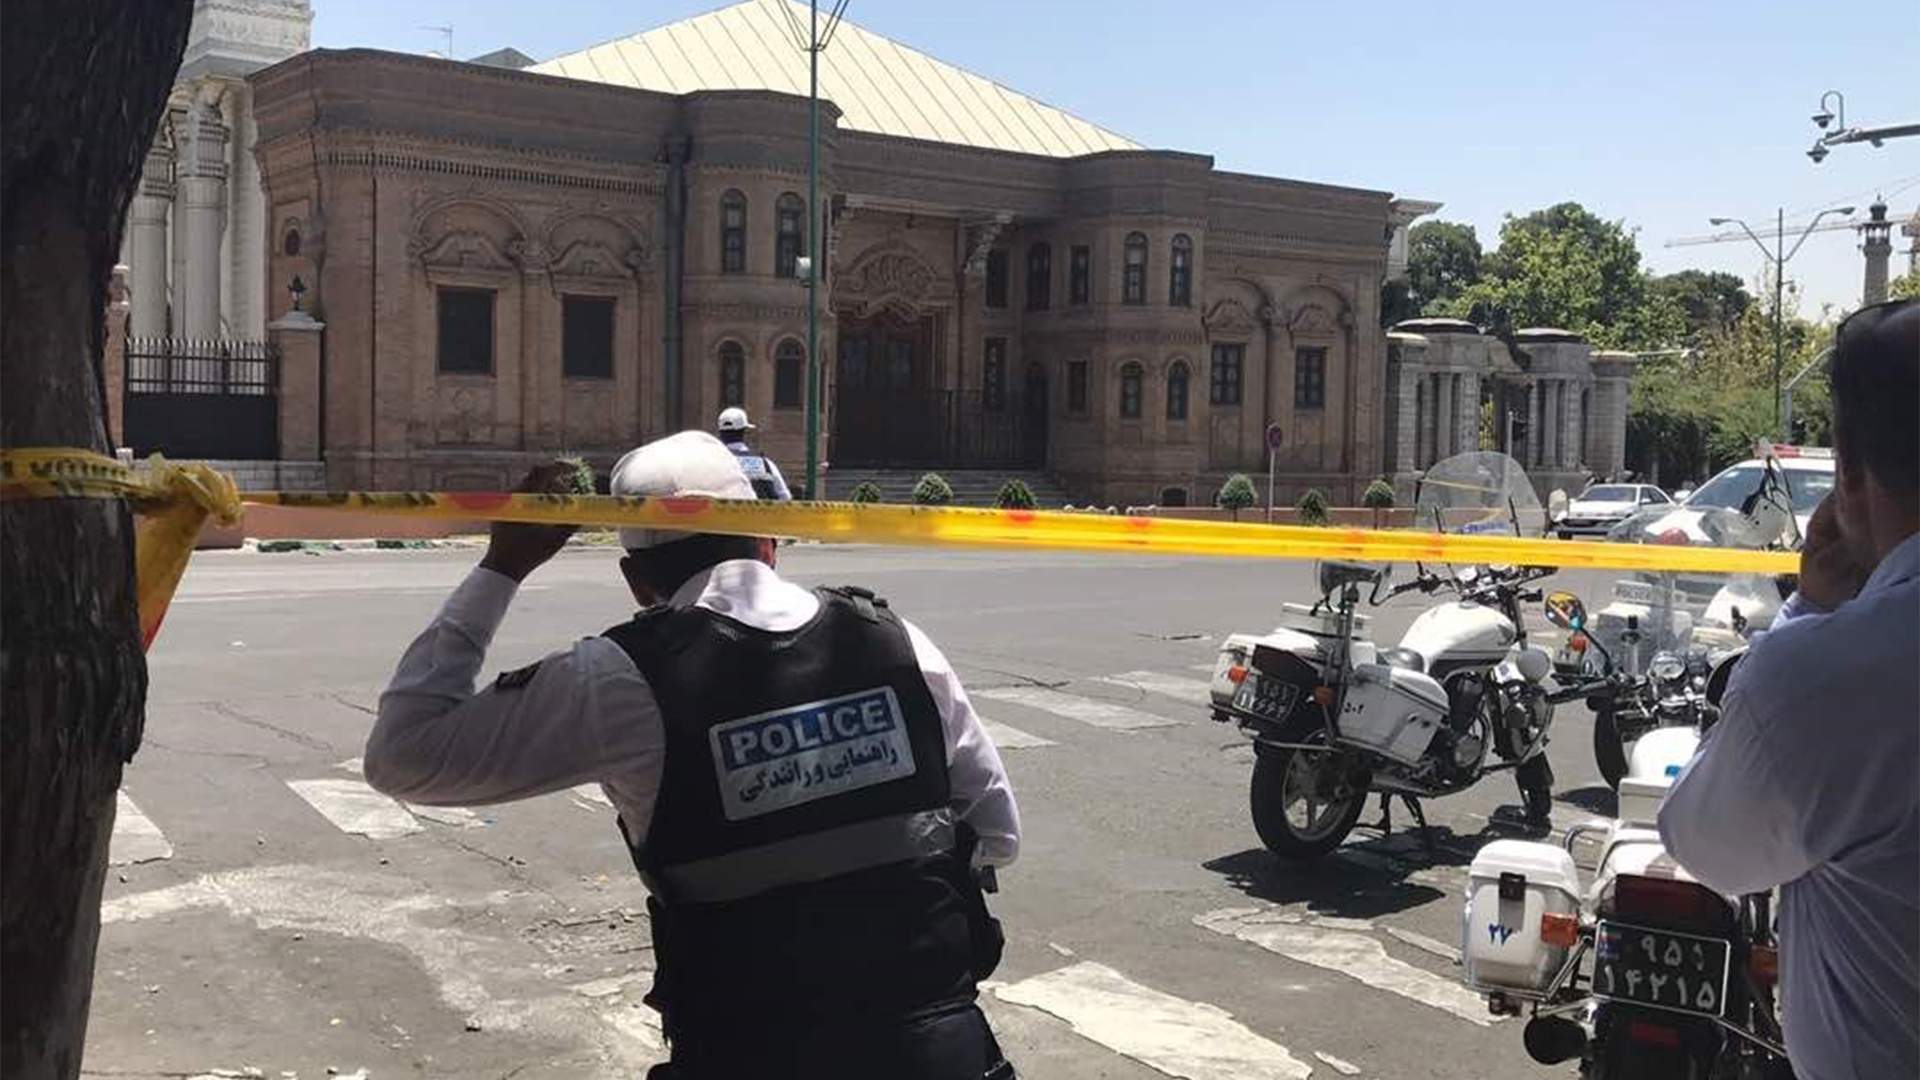 Polizeiabsperrung in Teheran | picture alliance / abaca